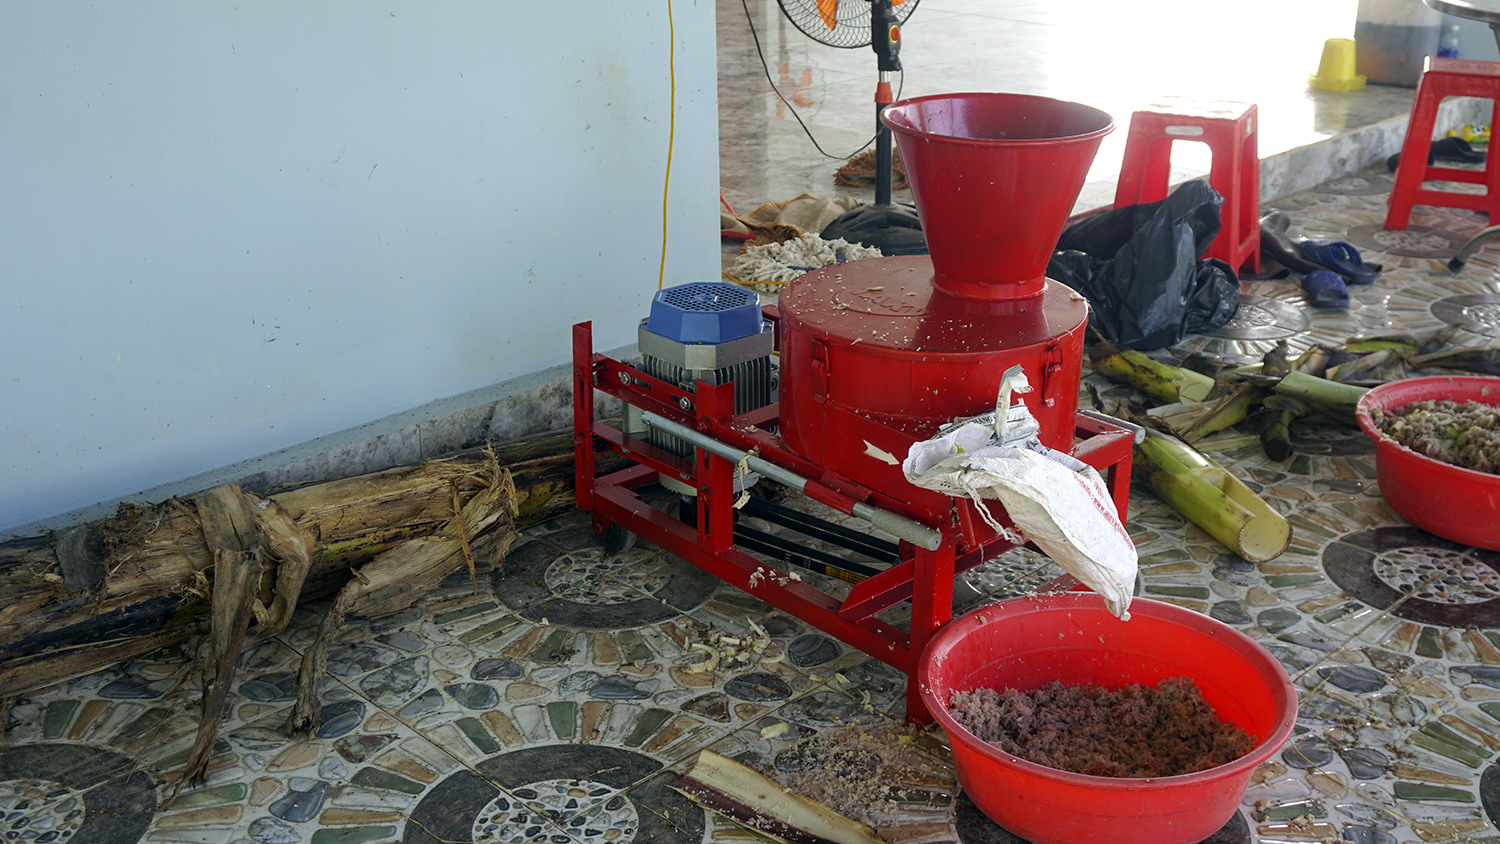 Giao máy băm chuối cho gà ở Tây Ninh